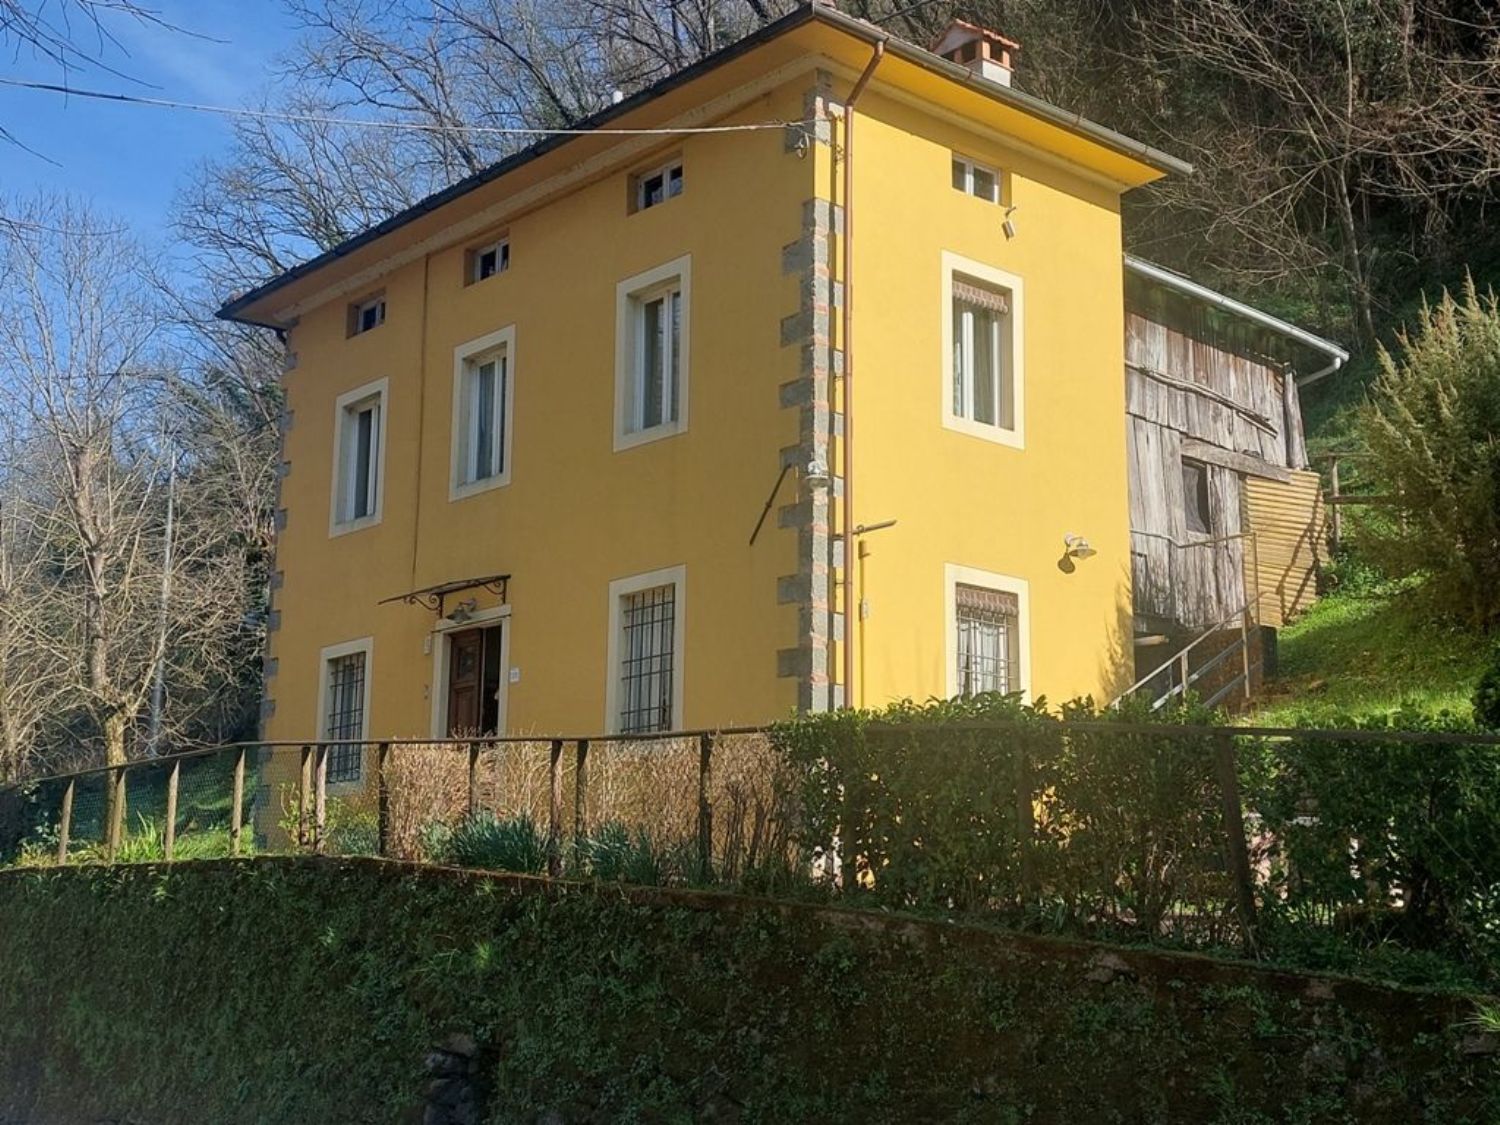 Casa indipendente con giardino, Borgo a Mozzano chifenti